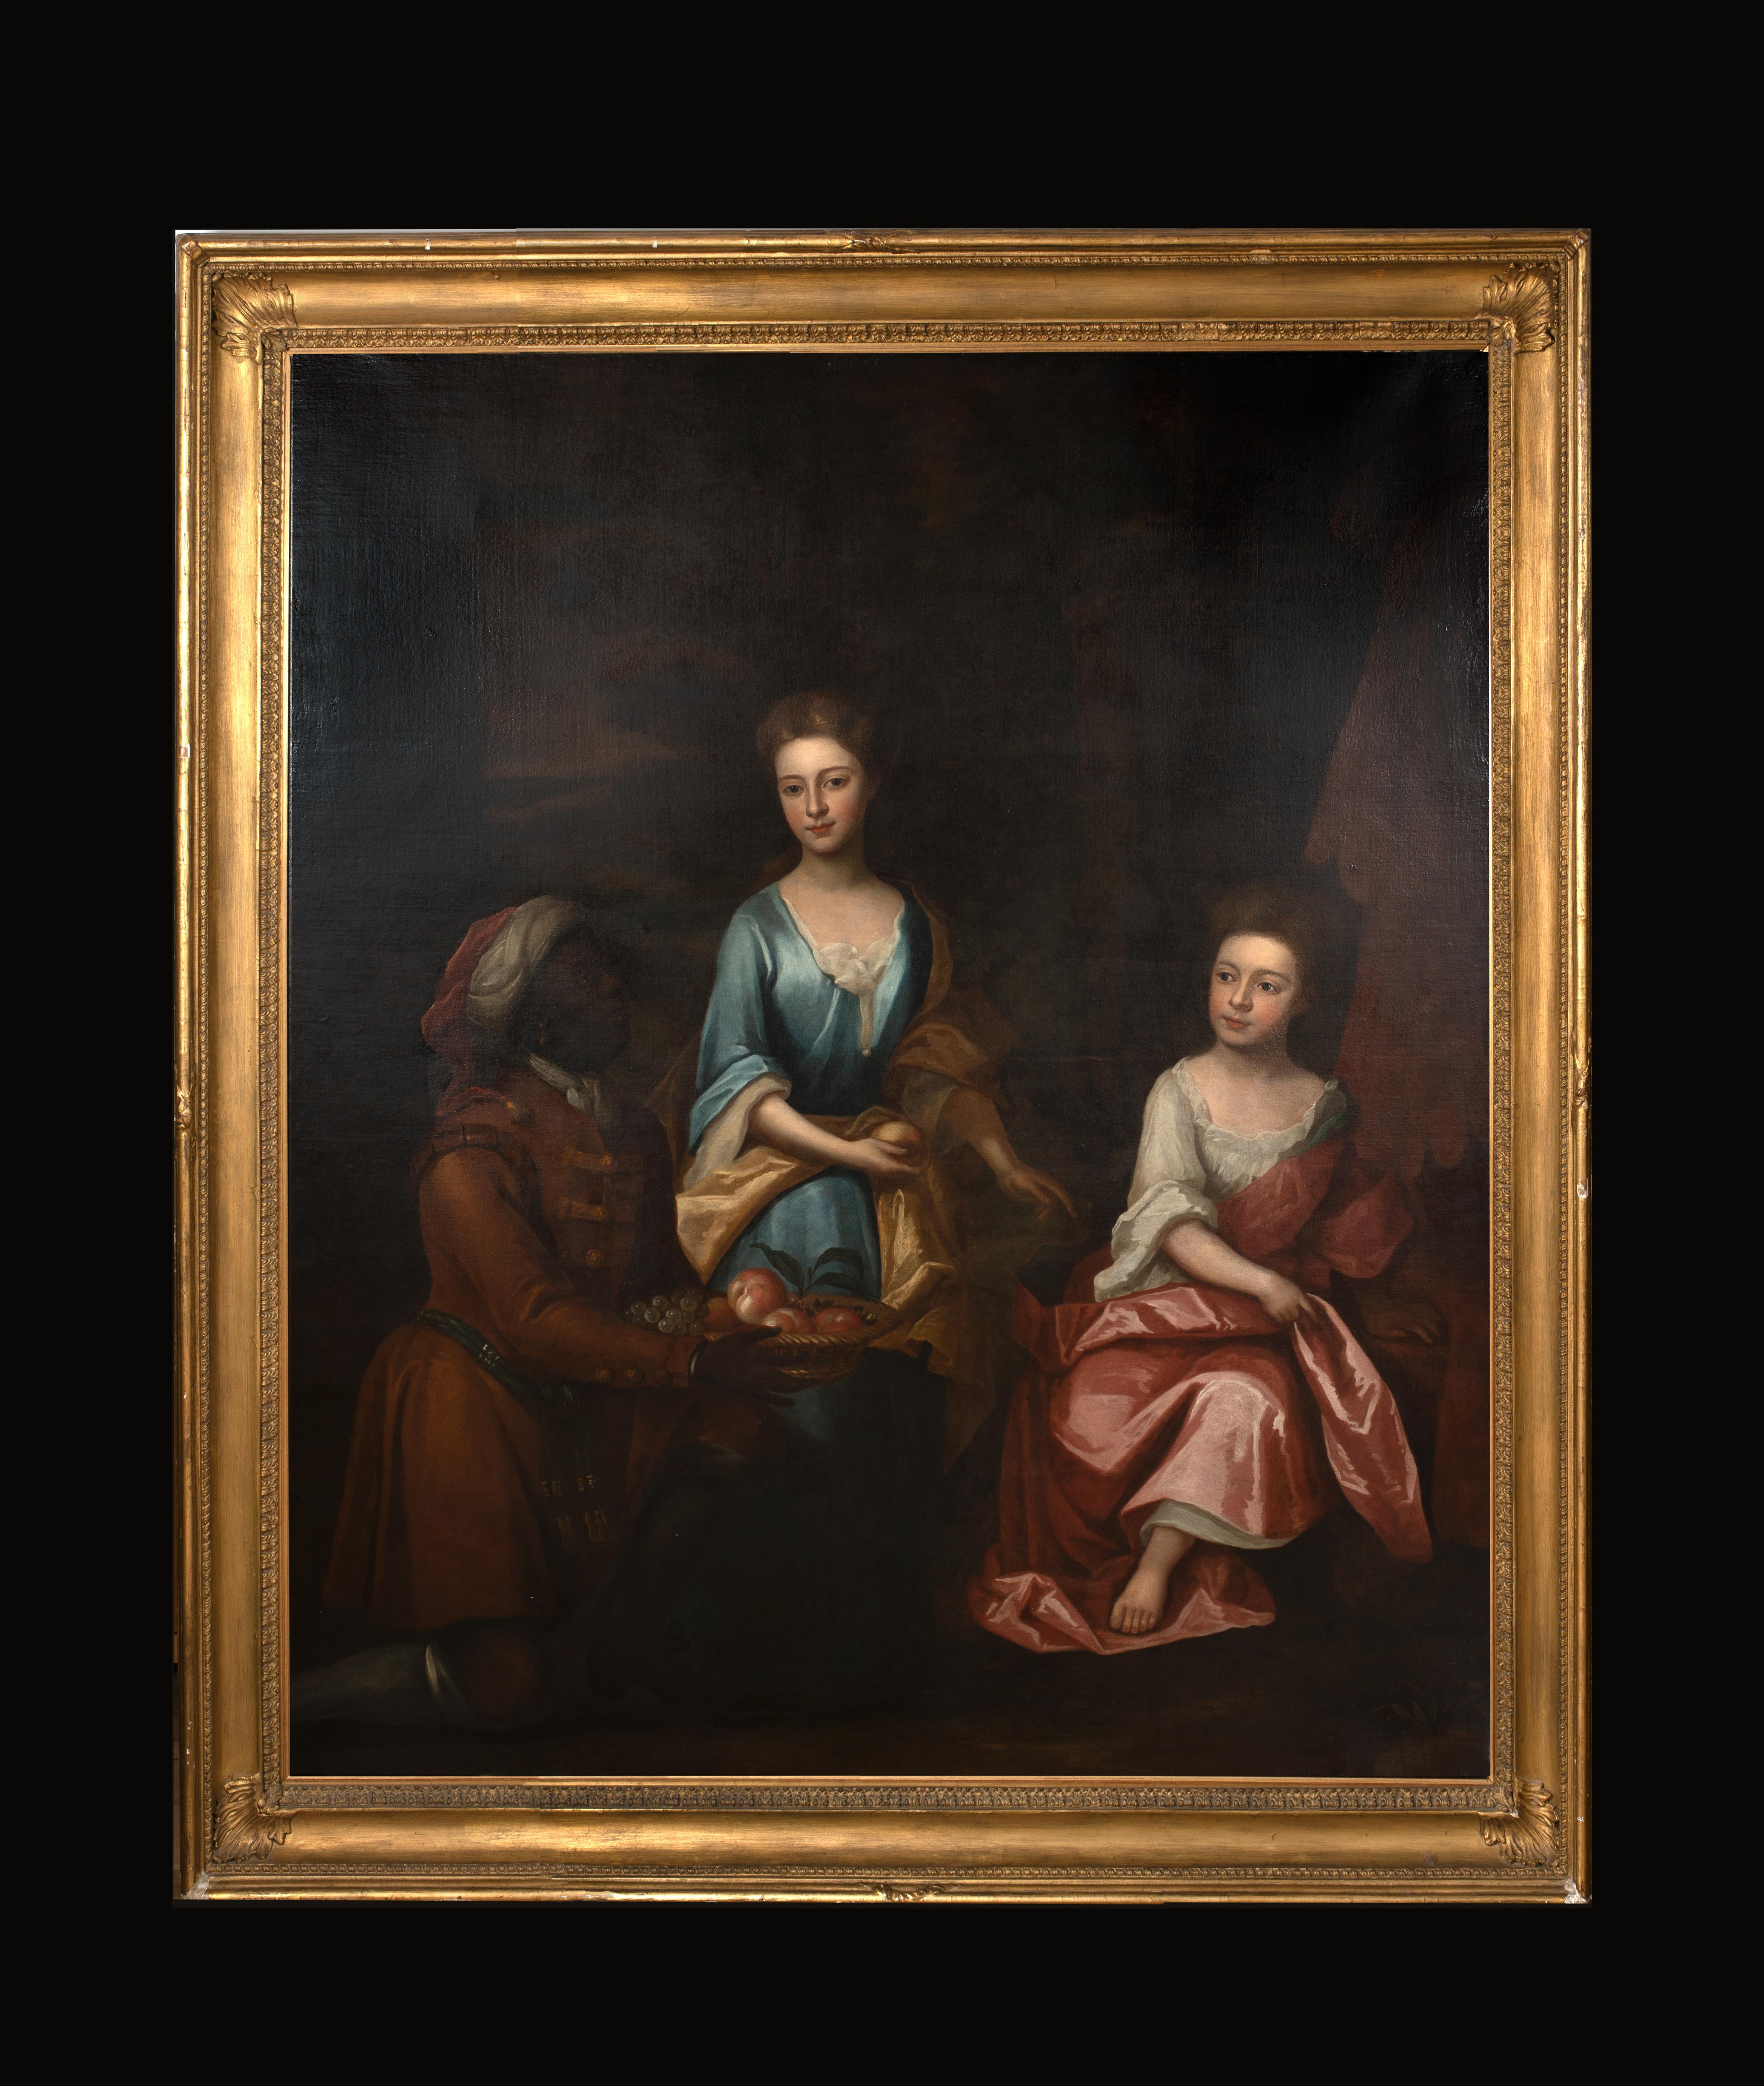 Portrait de deux jeunes filles et d'un serviteur, 17e siècle

cercle de Sir Godfrey KNELLER (1646-1723)

Immense portrait de maître ancien anglais du 17e siècle représentant deux jeunes filles et une servante, huile sur toile. Immense étude en pied